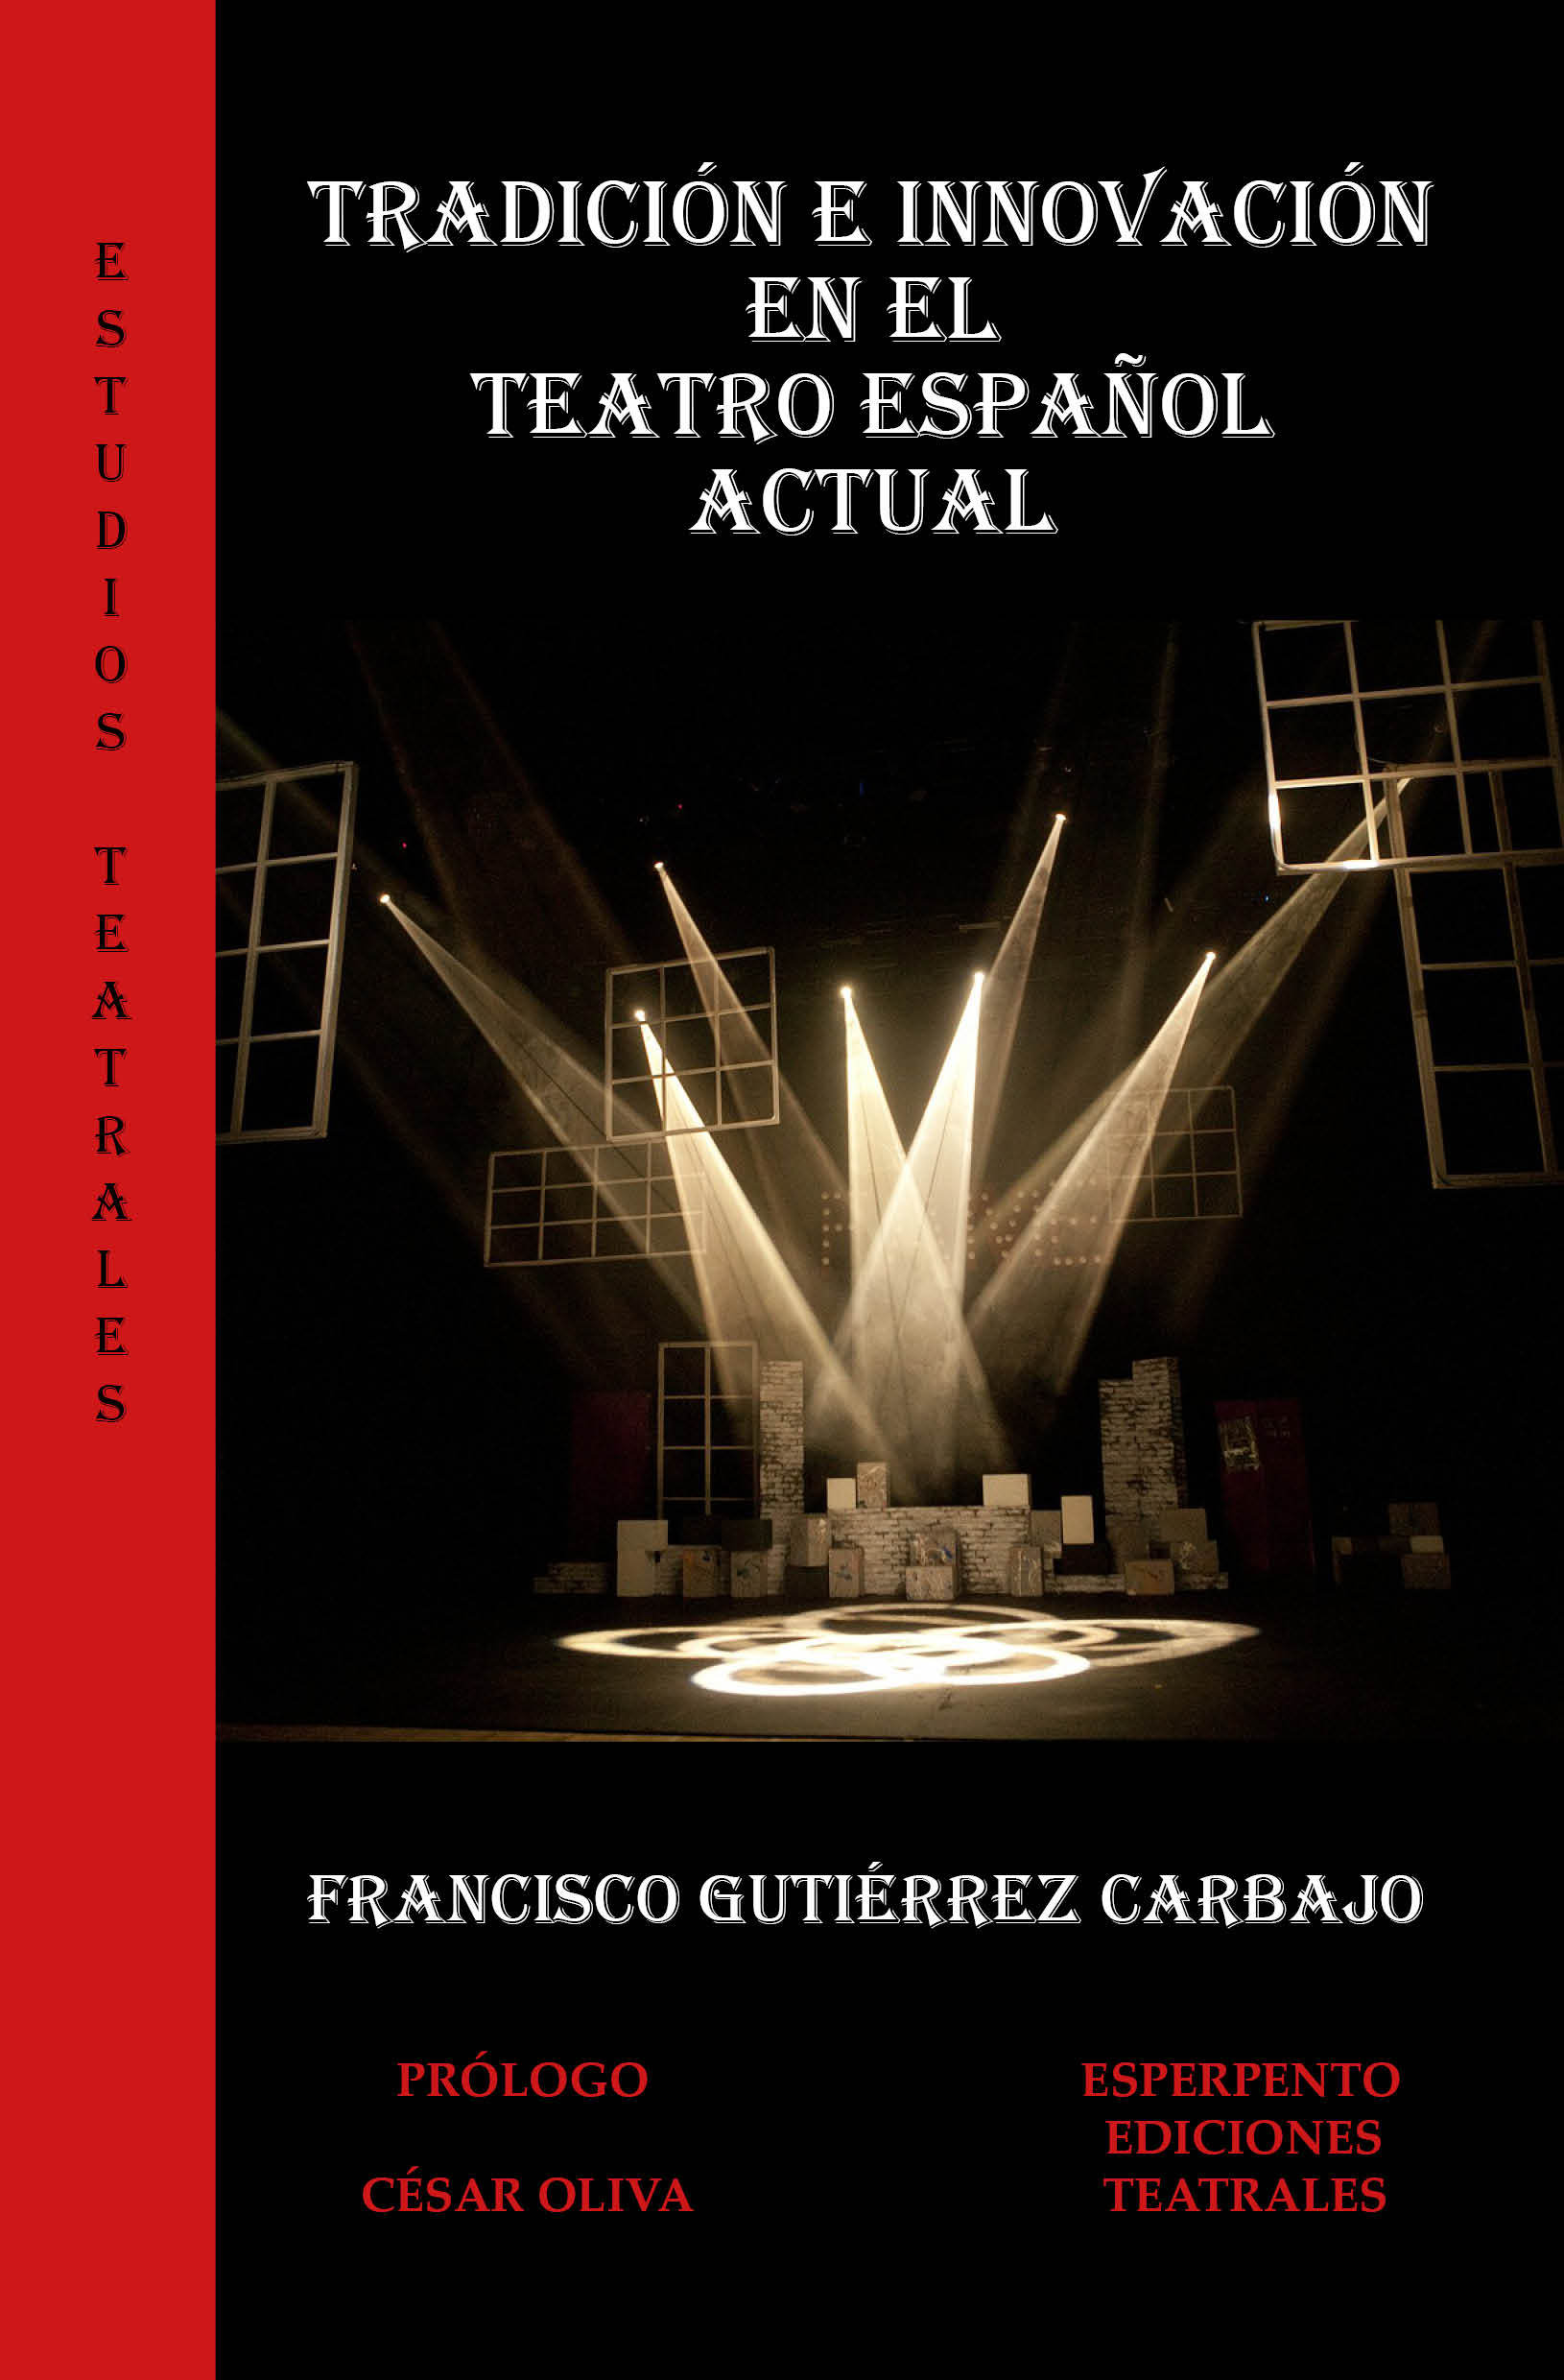 TRADICIÓN E INNOVACIÓN EN EL TEATRO ESPAÑOL ACTUAL, de Francisco Gutiérrez Carbajo